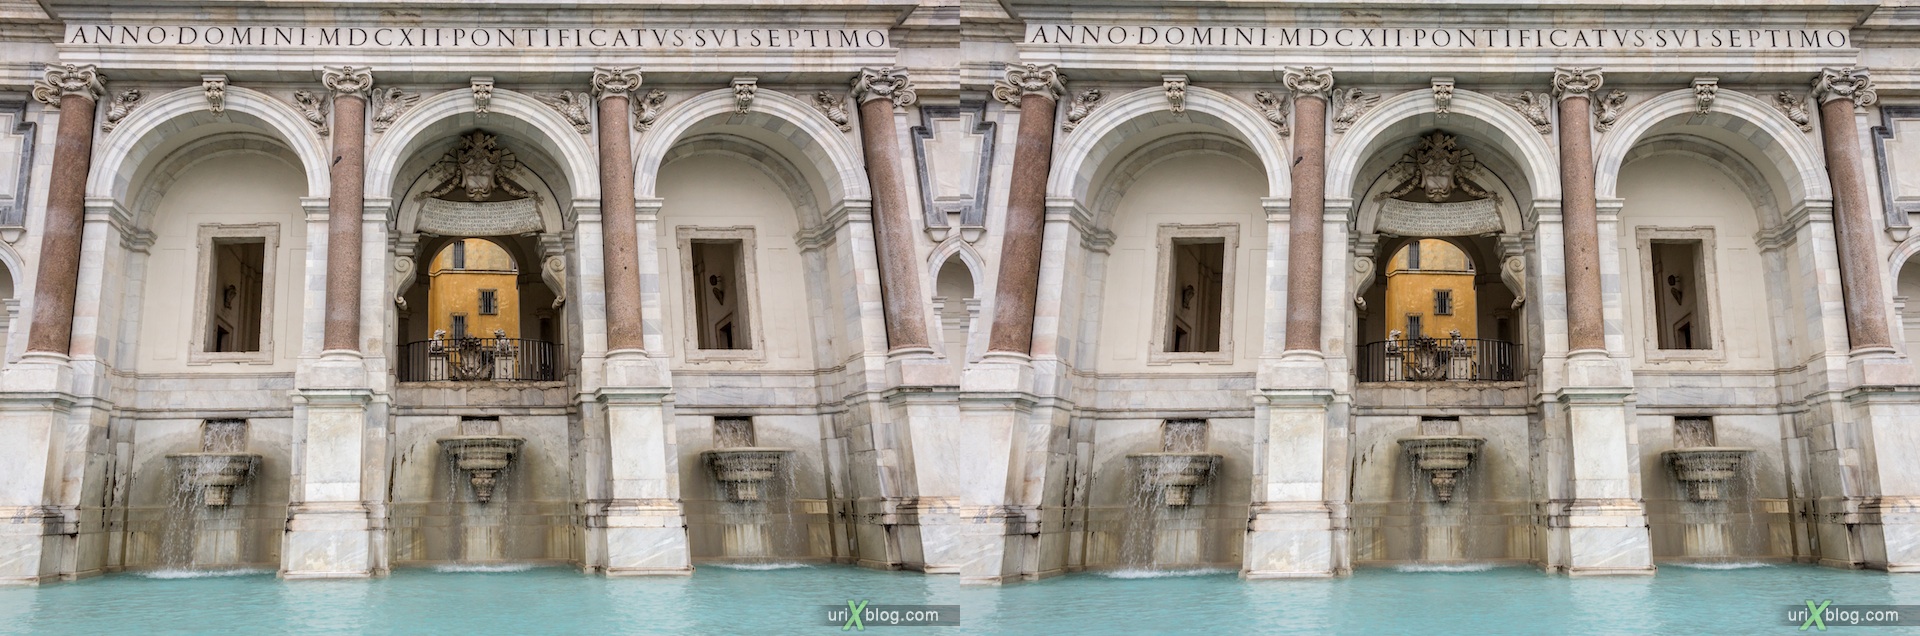 2012, фонтан dell'Acqua Paola, Рим, Италия, 3D, перекрёстные стереопары, стерео, стереопара, стереопары